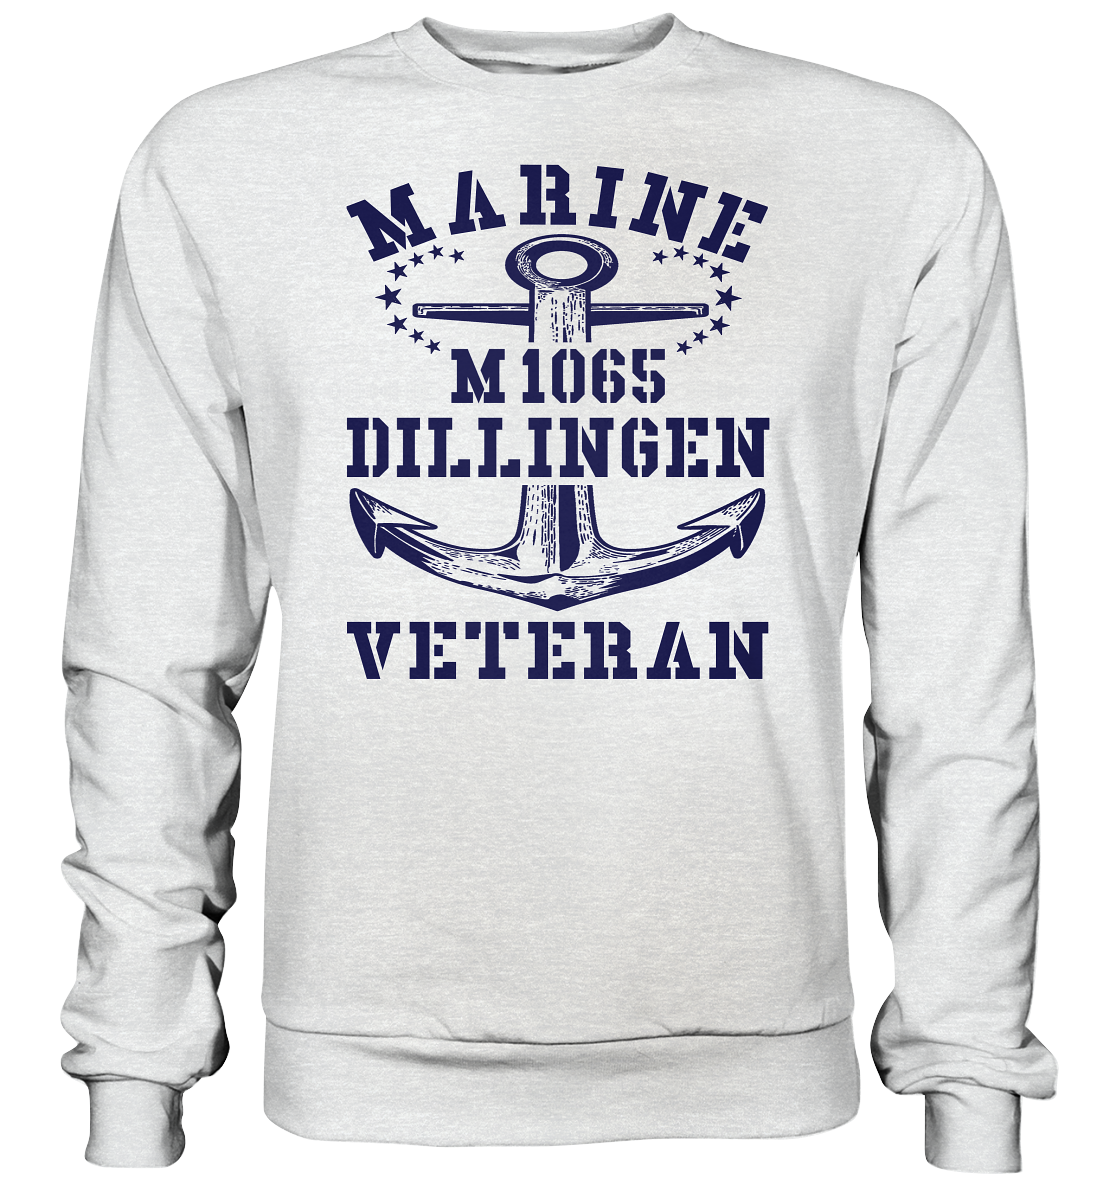 Mij.-Boot M1065 DILLINGEN Marine Veteran  - Premium Sweatshirt